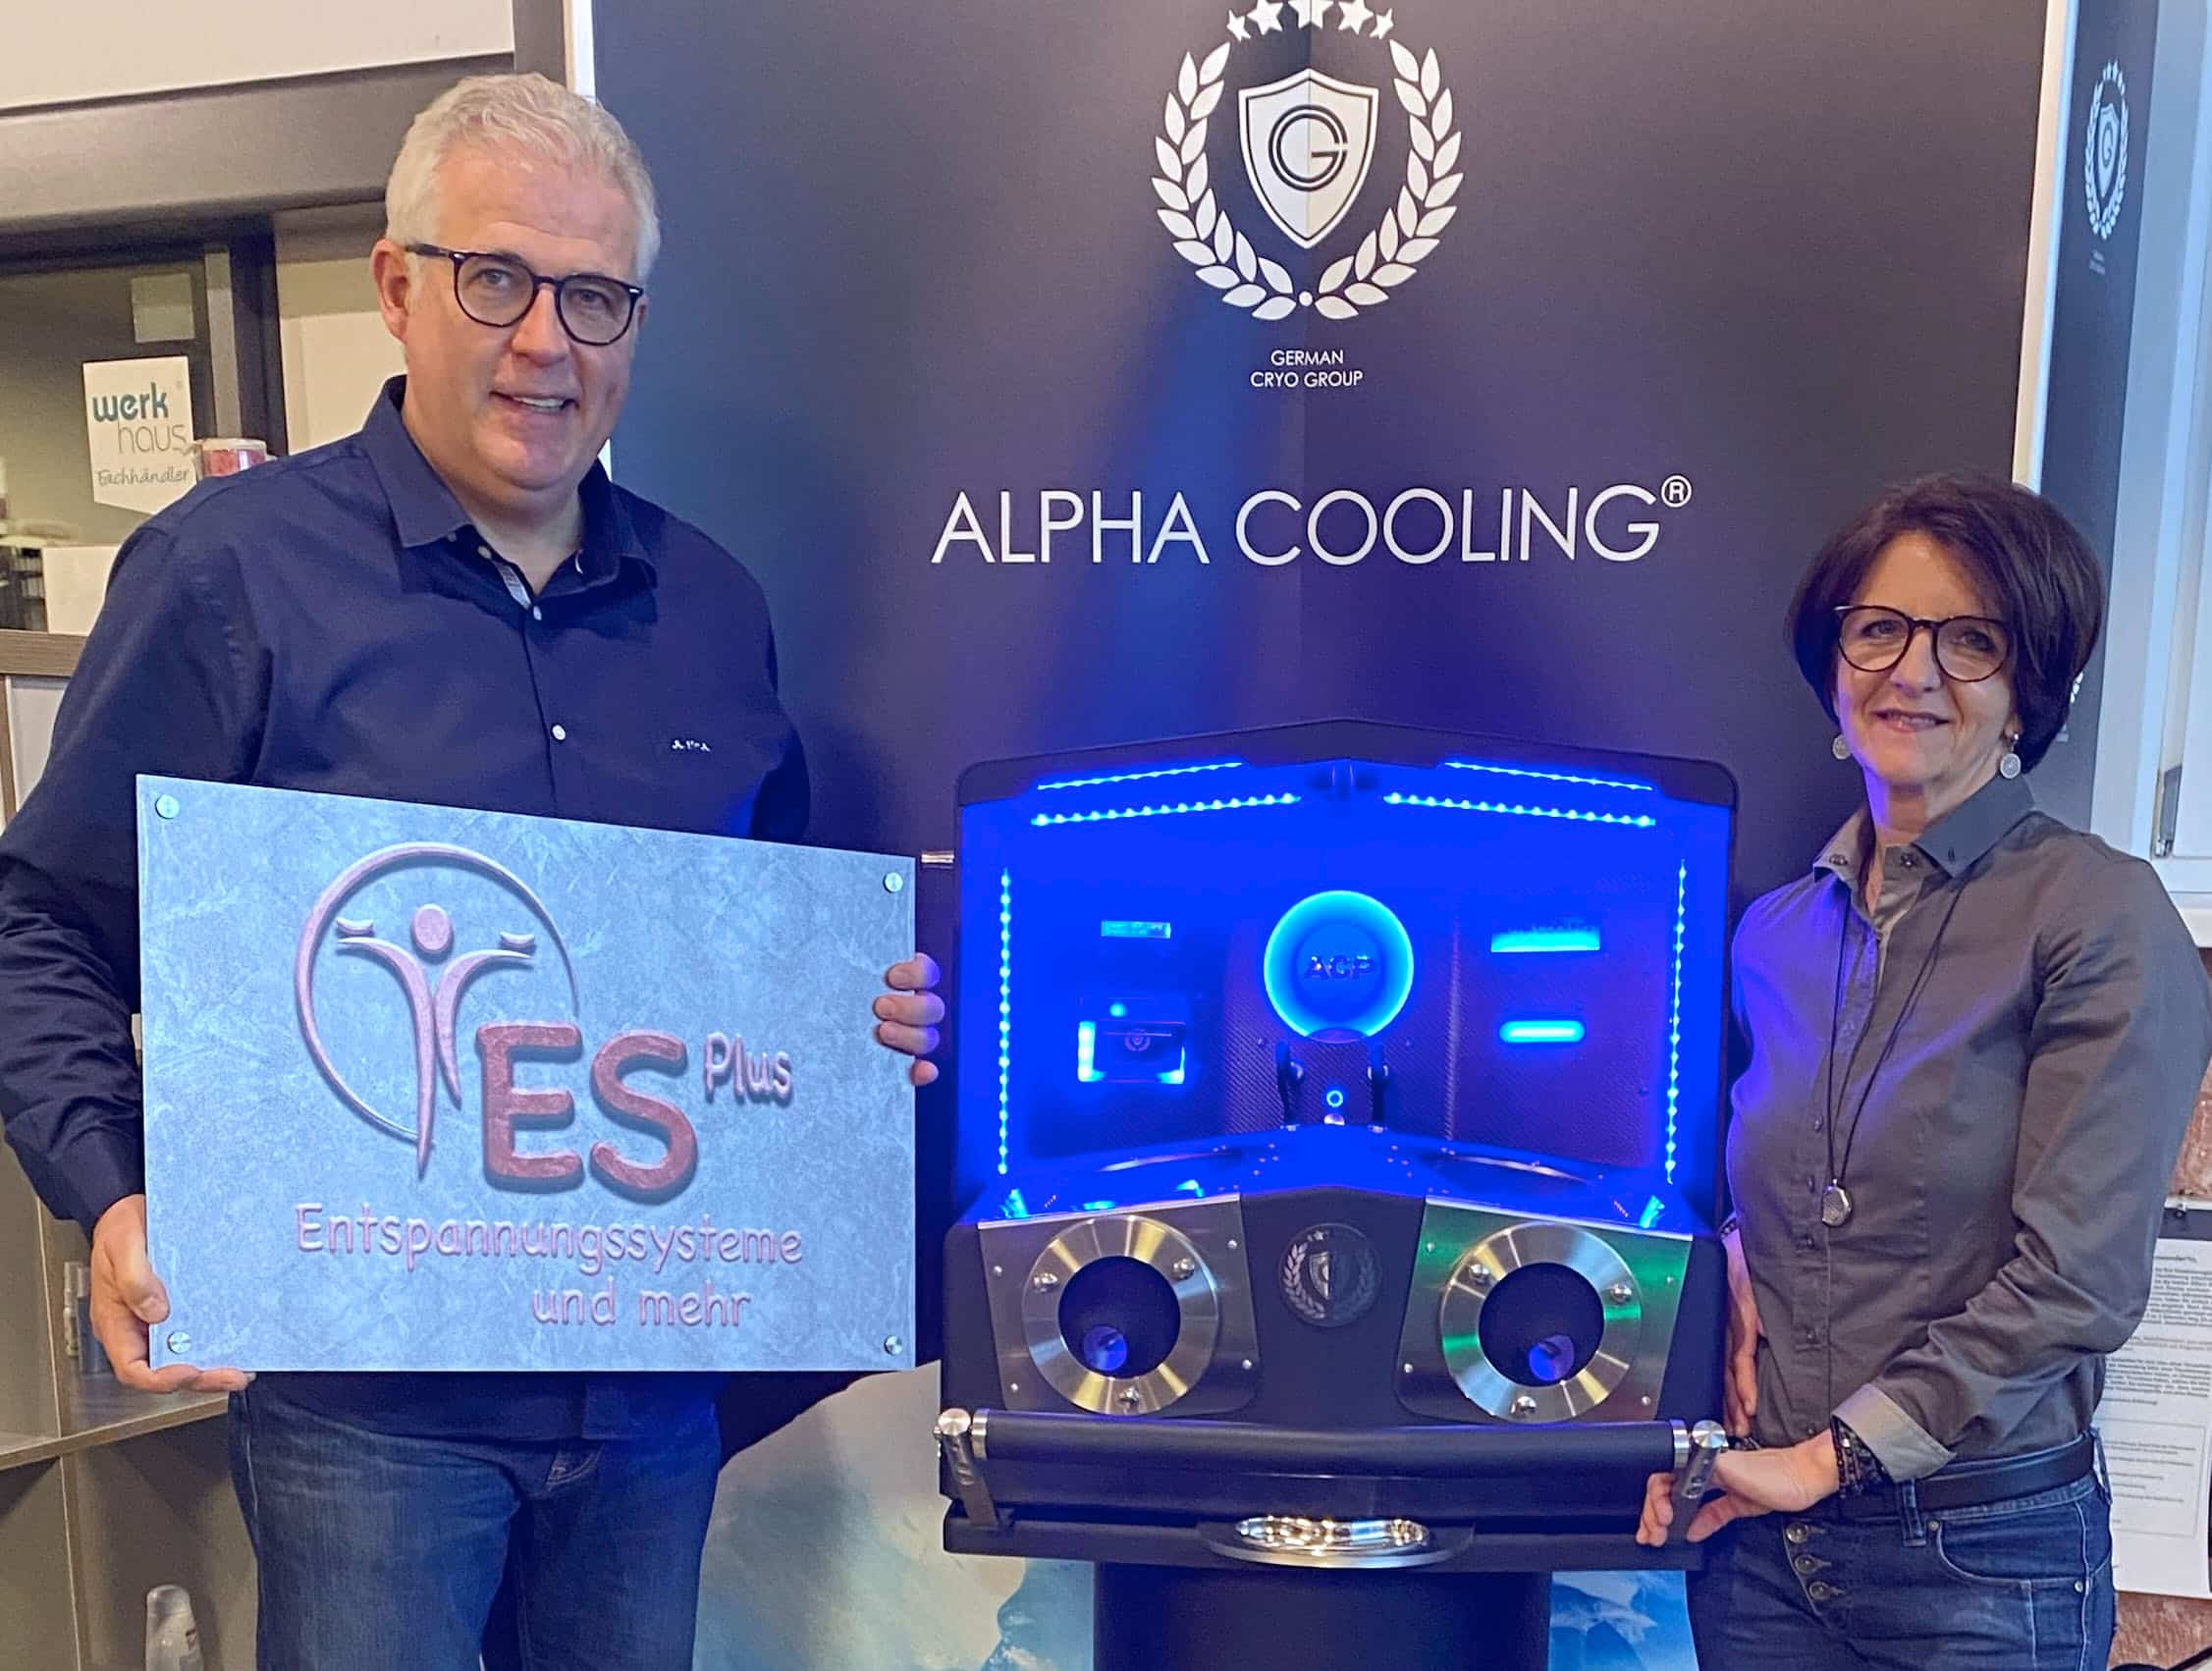 Setzen auf die innovative Kälteanwendung Alpha Cooling Professional: Carina und Jürgen Schütterle. Foto: ES Plus